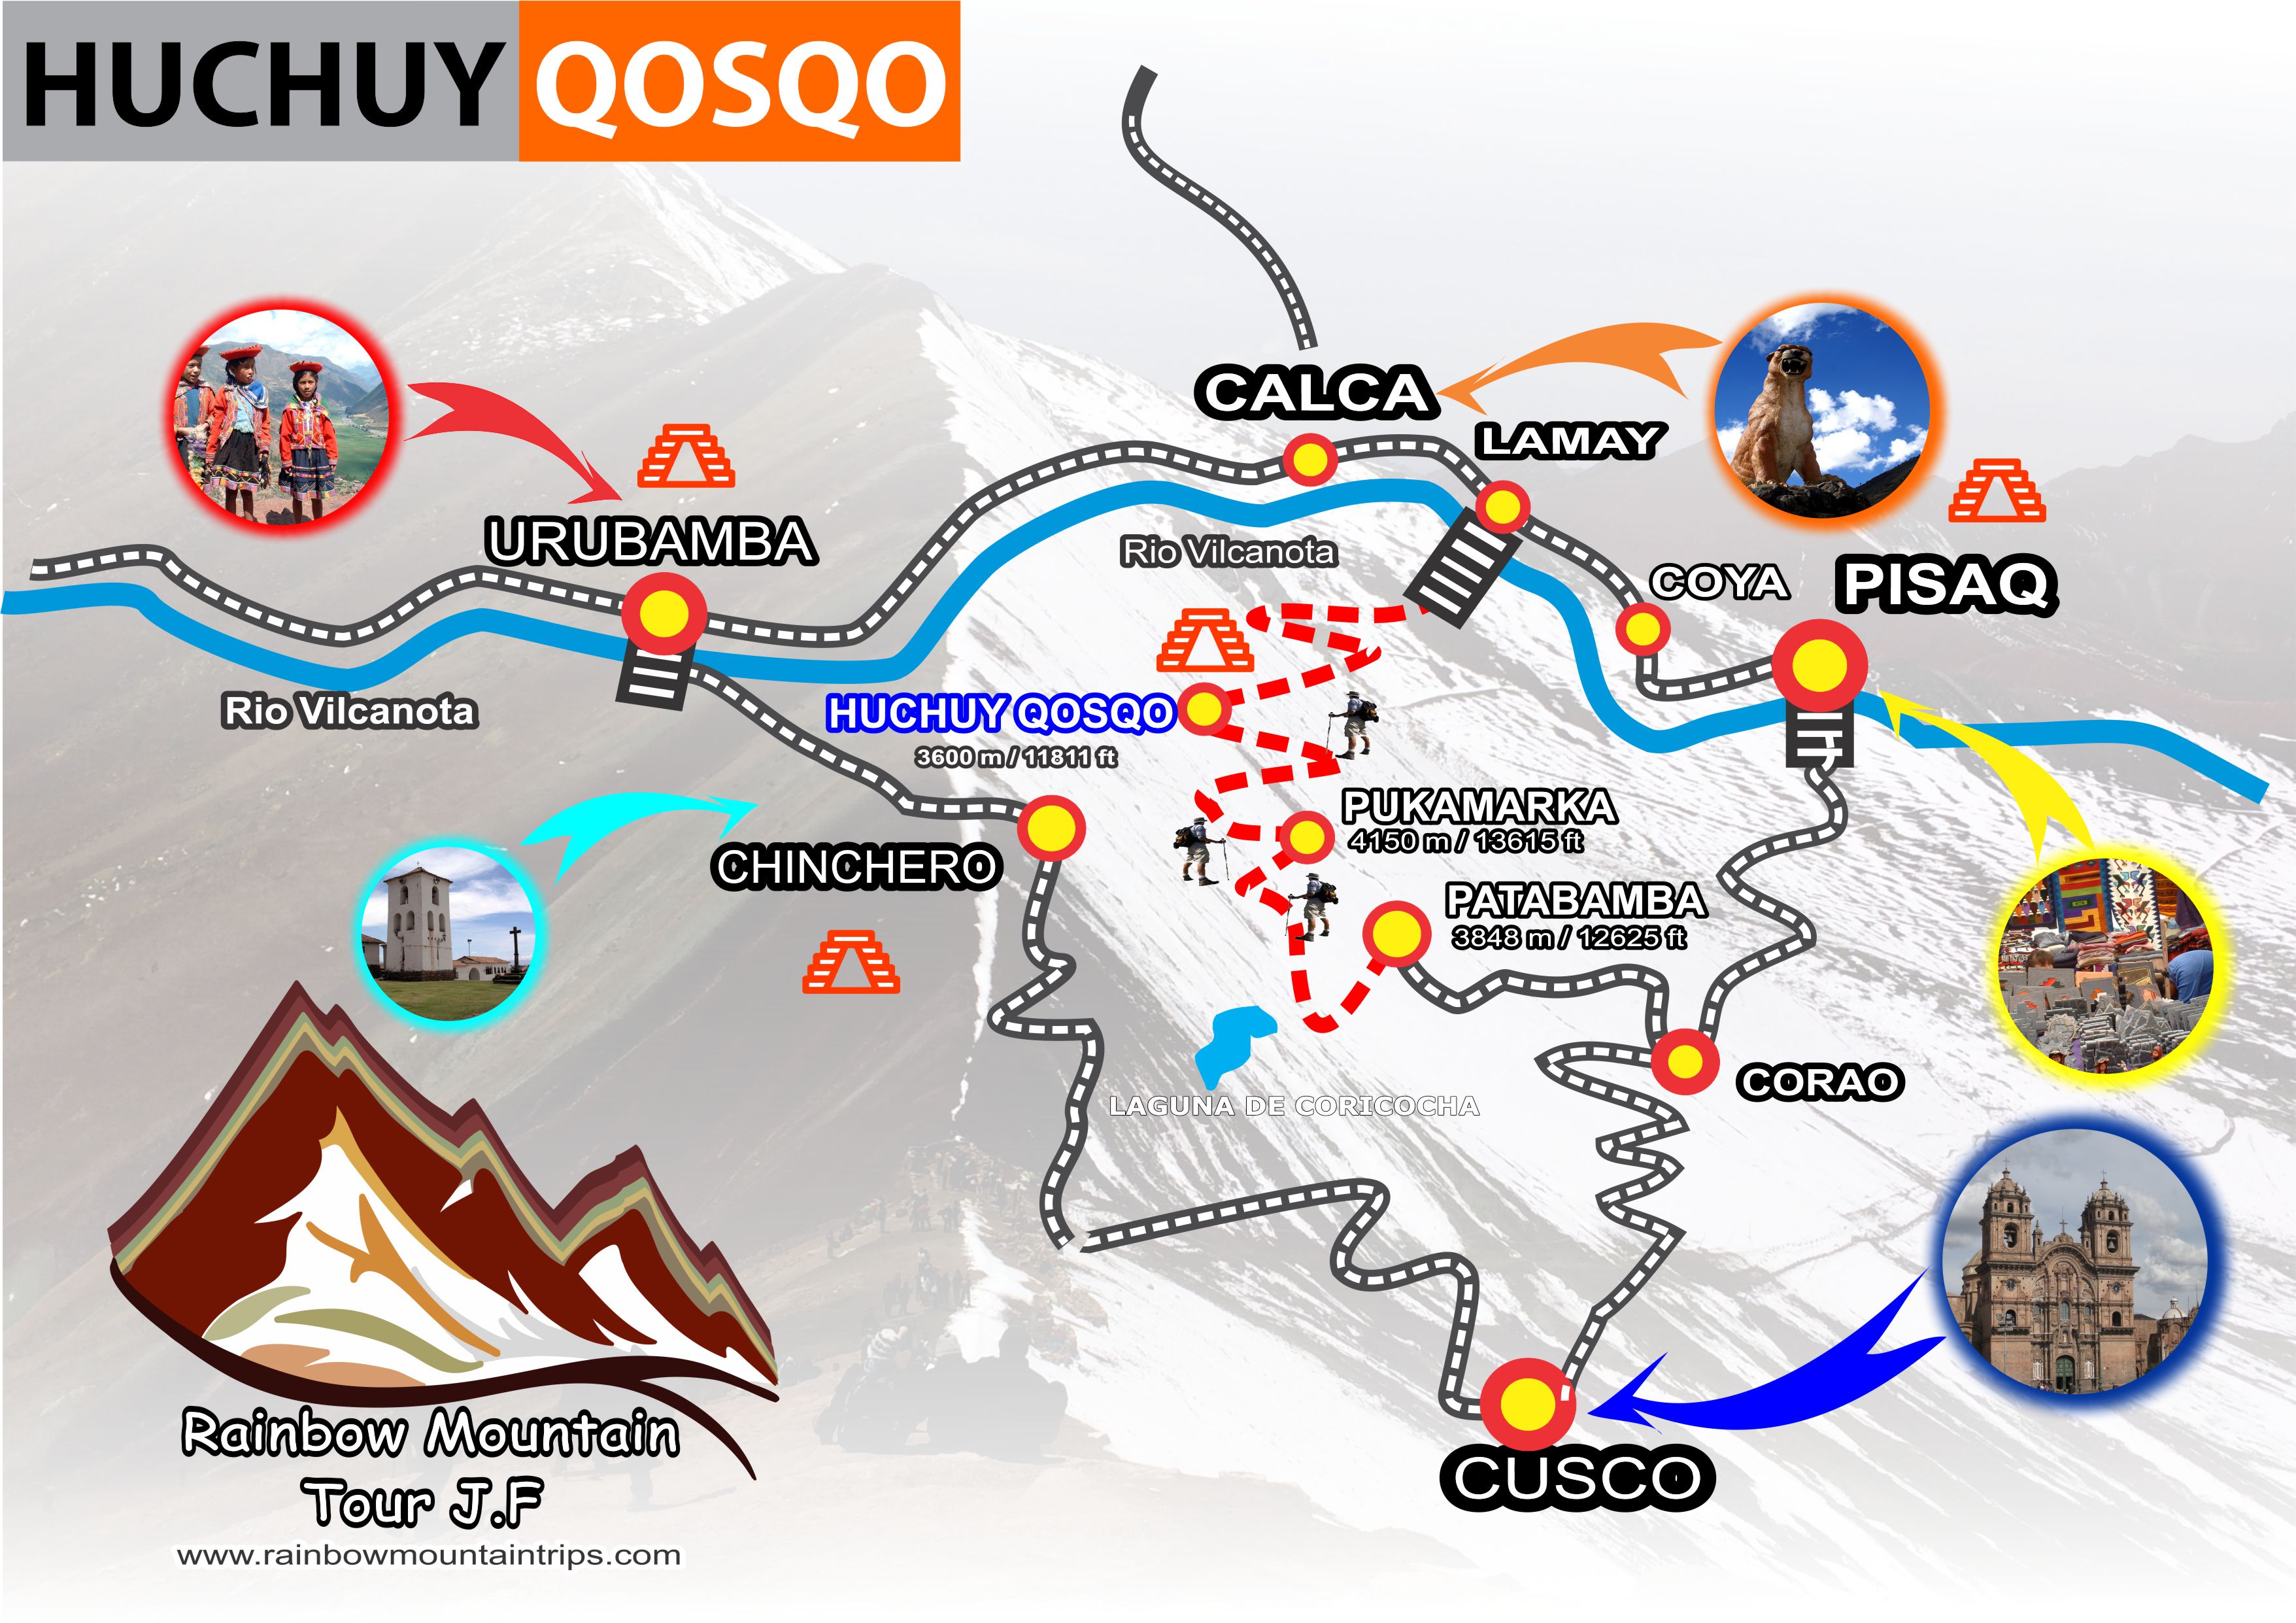 Huchuy qosqo map